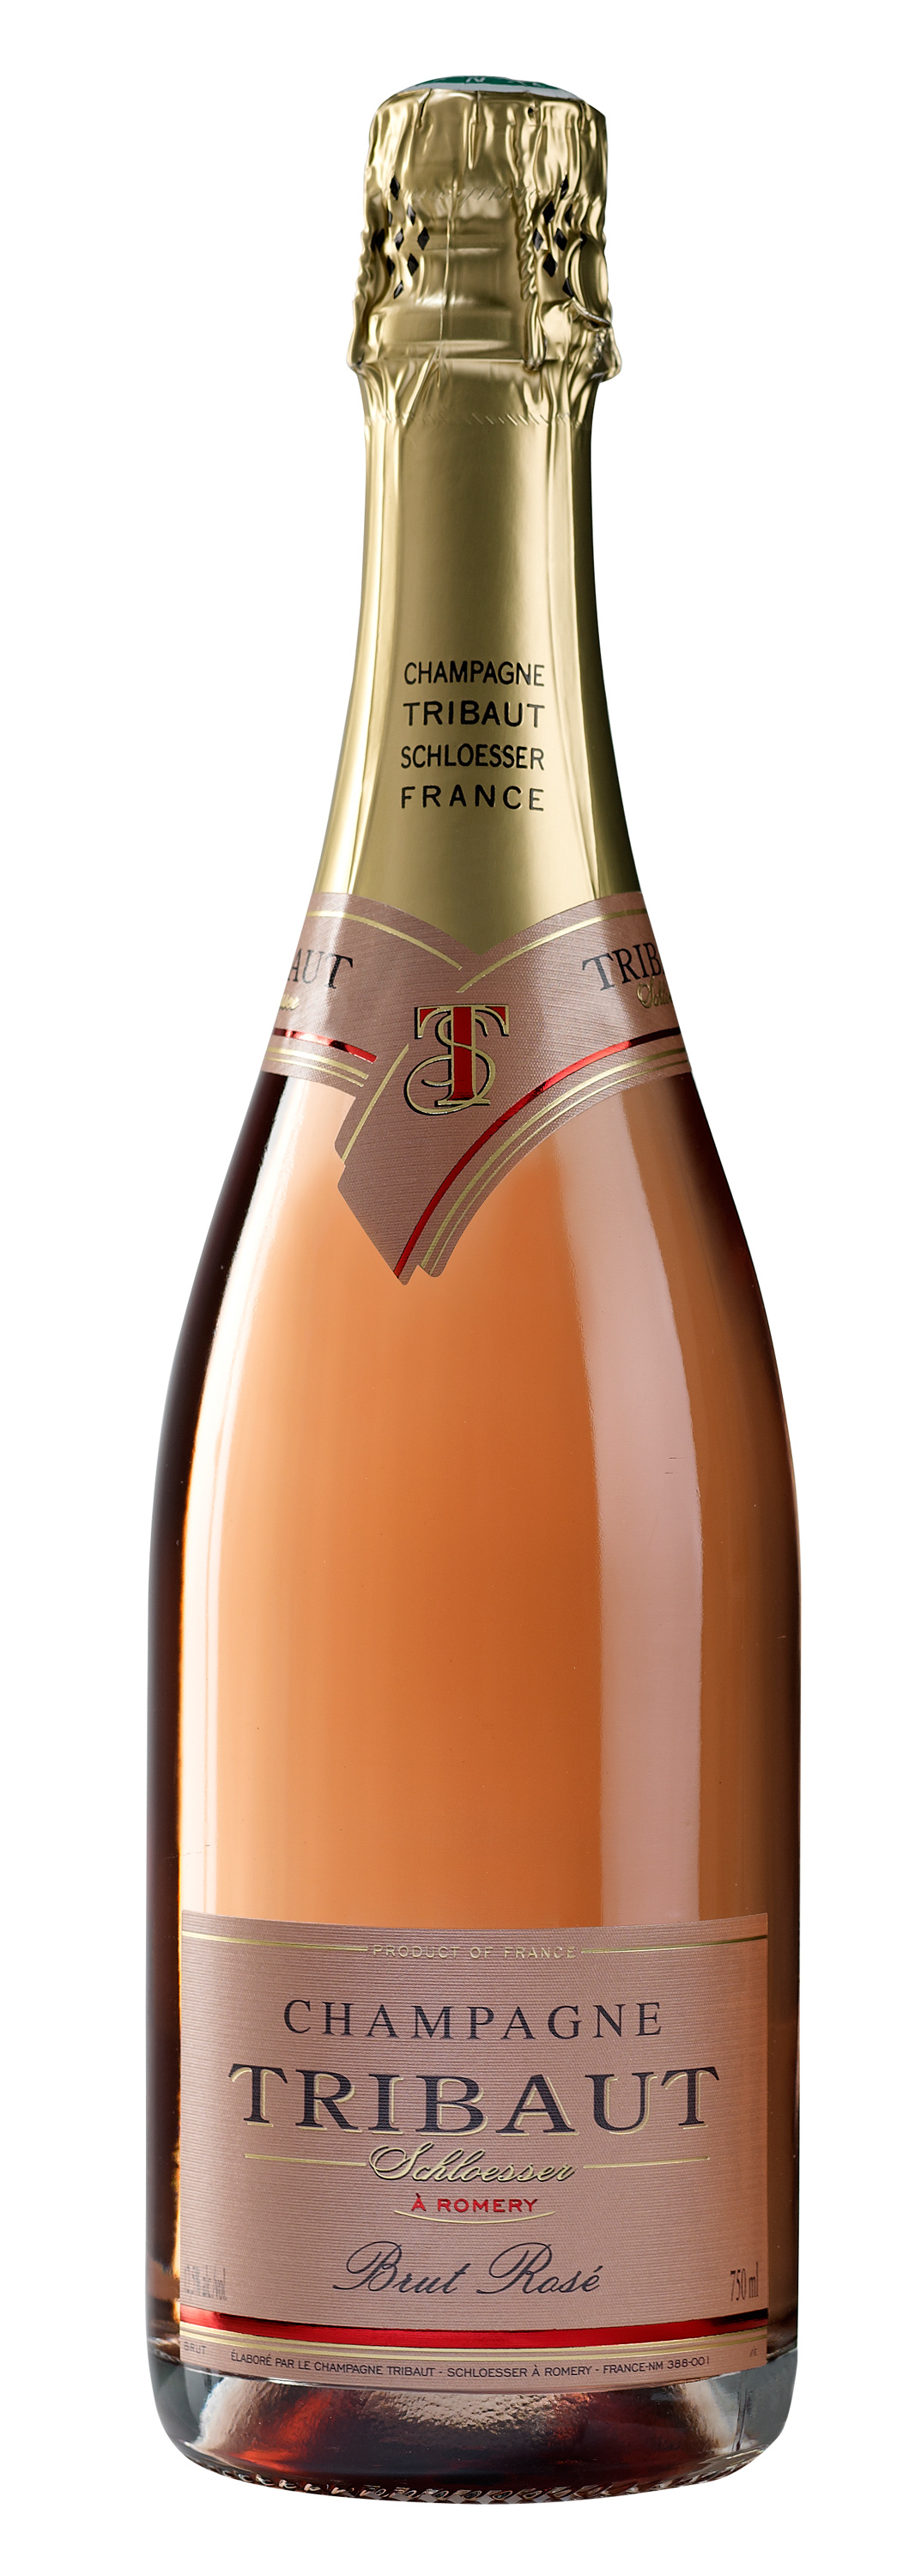 NV Champagne Tribaut Rose Brut - click image for full description